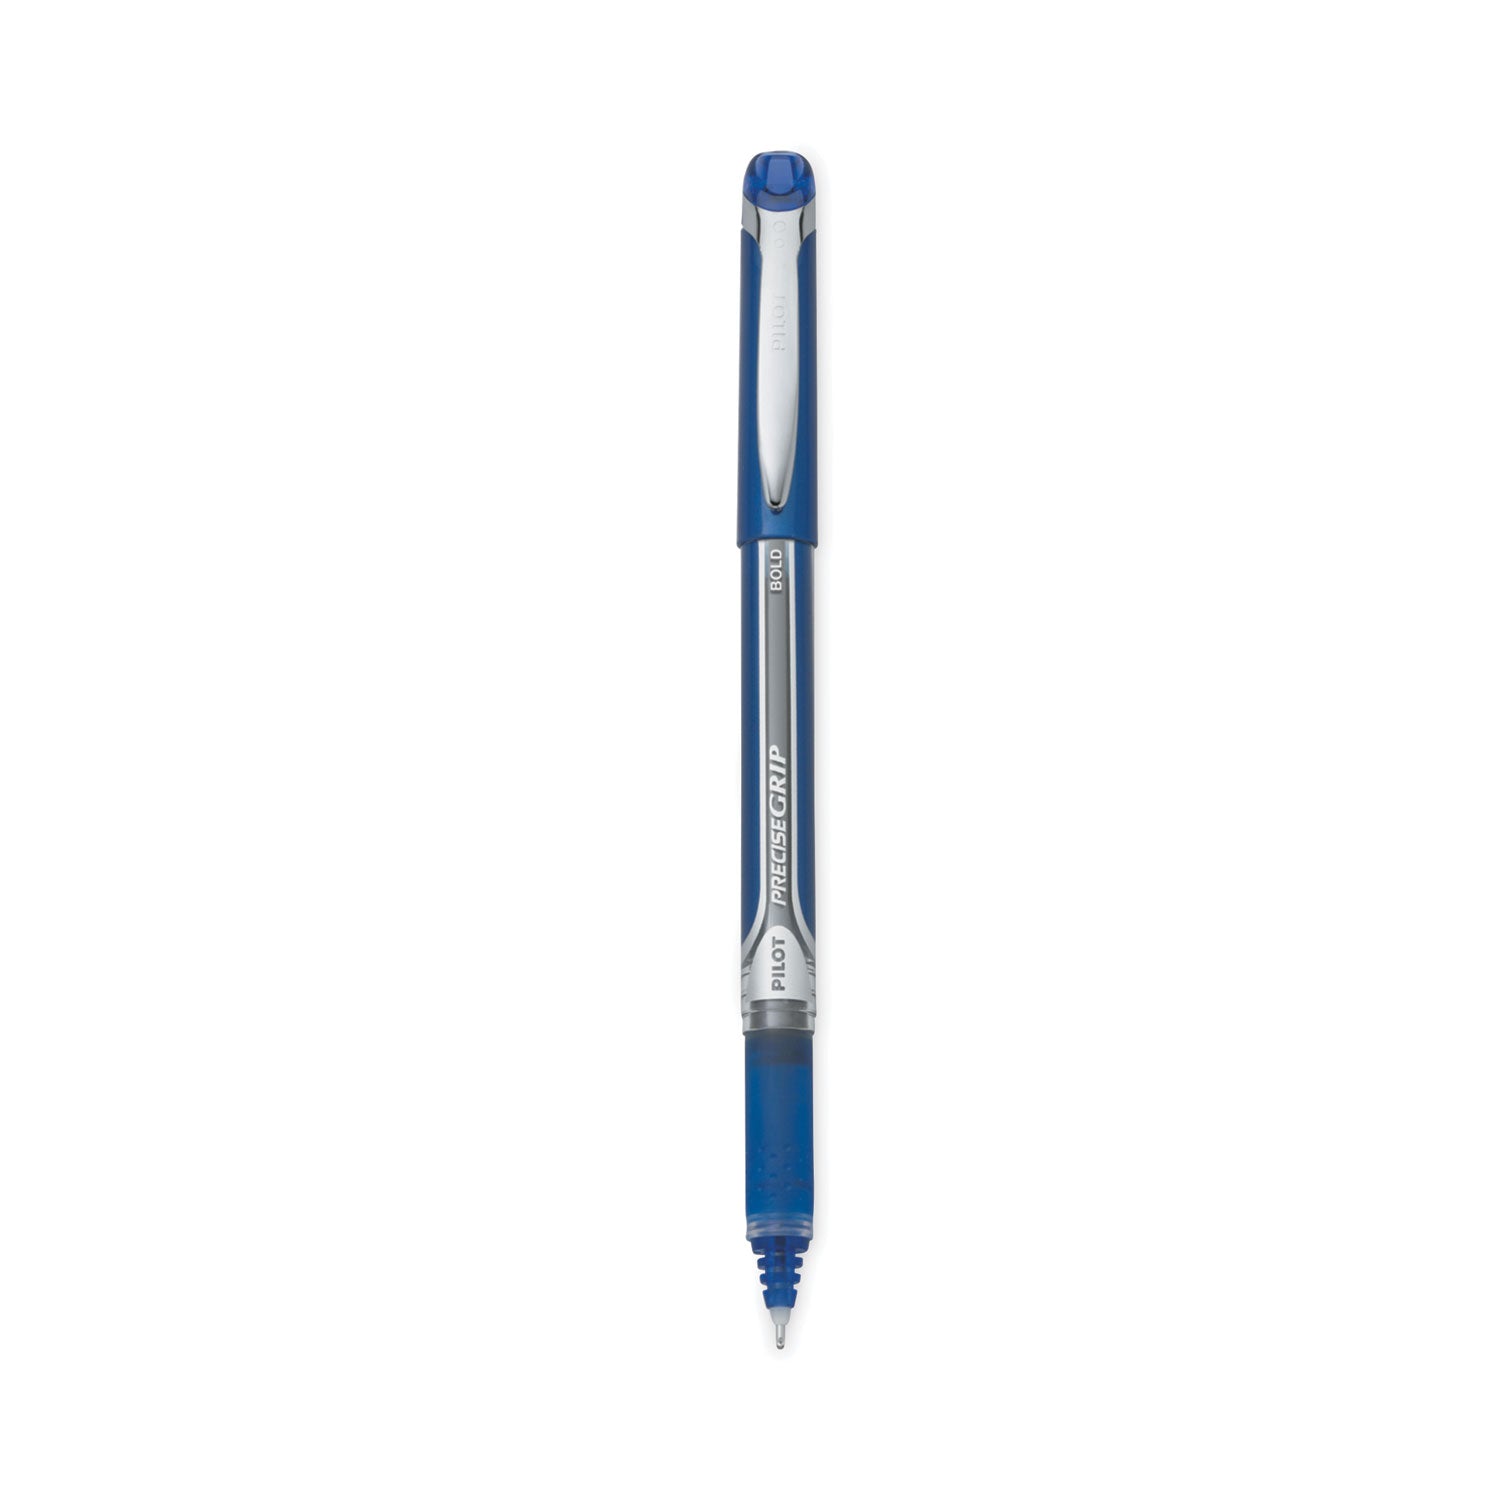 Precise Grip Roller Ball Pen, Stick, Bold 1 mm, Blue Ink, Blue Barrel - 